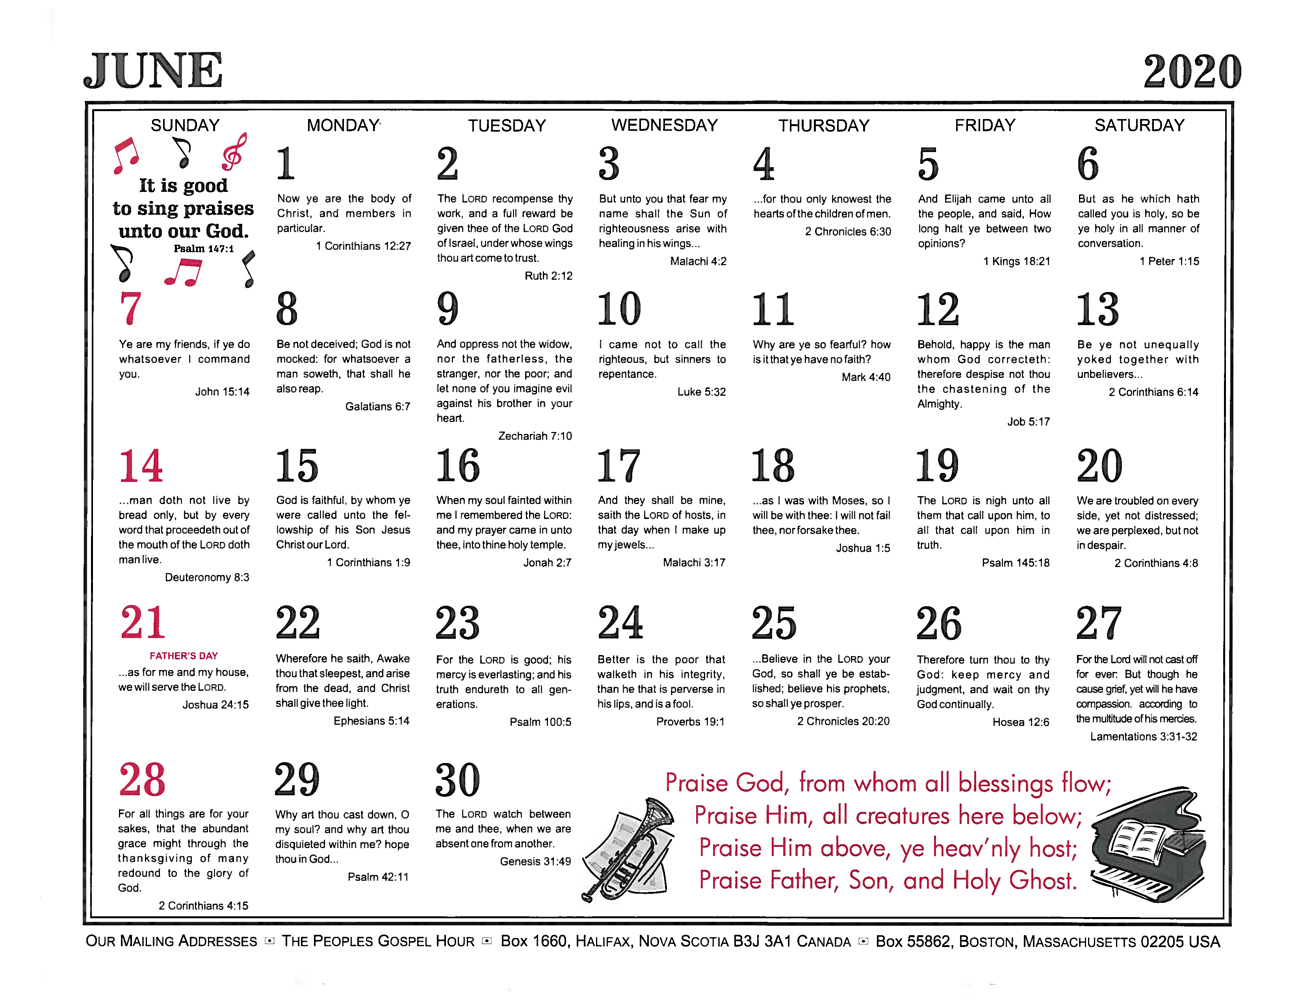 June: 2020 The Peoples Gospel Hour Calendar